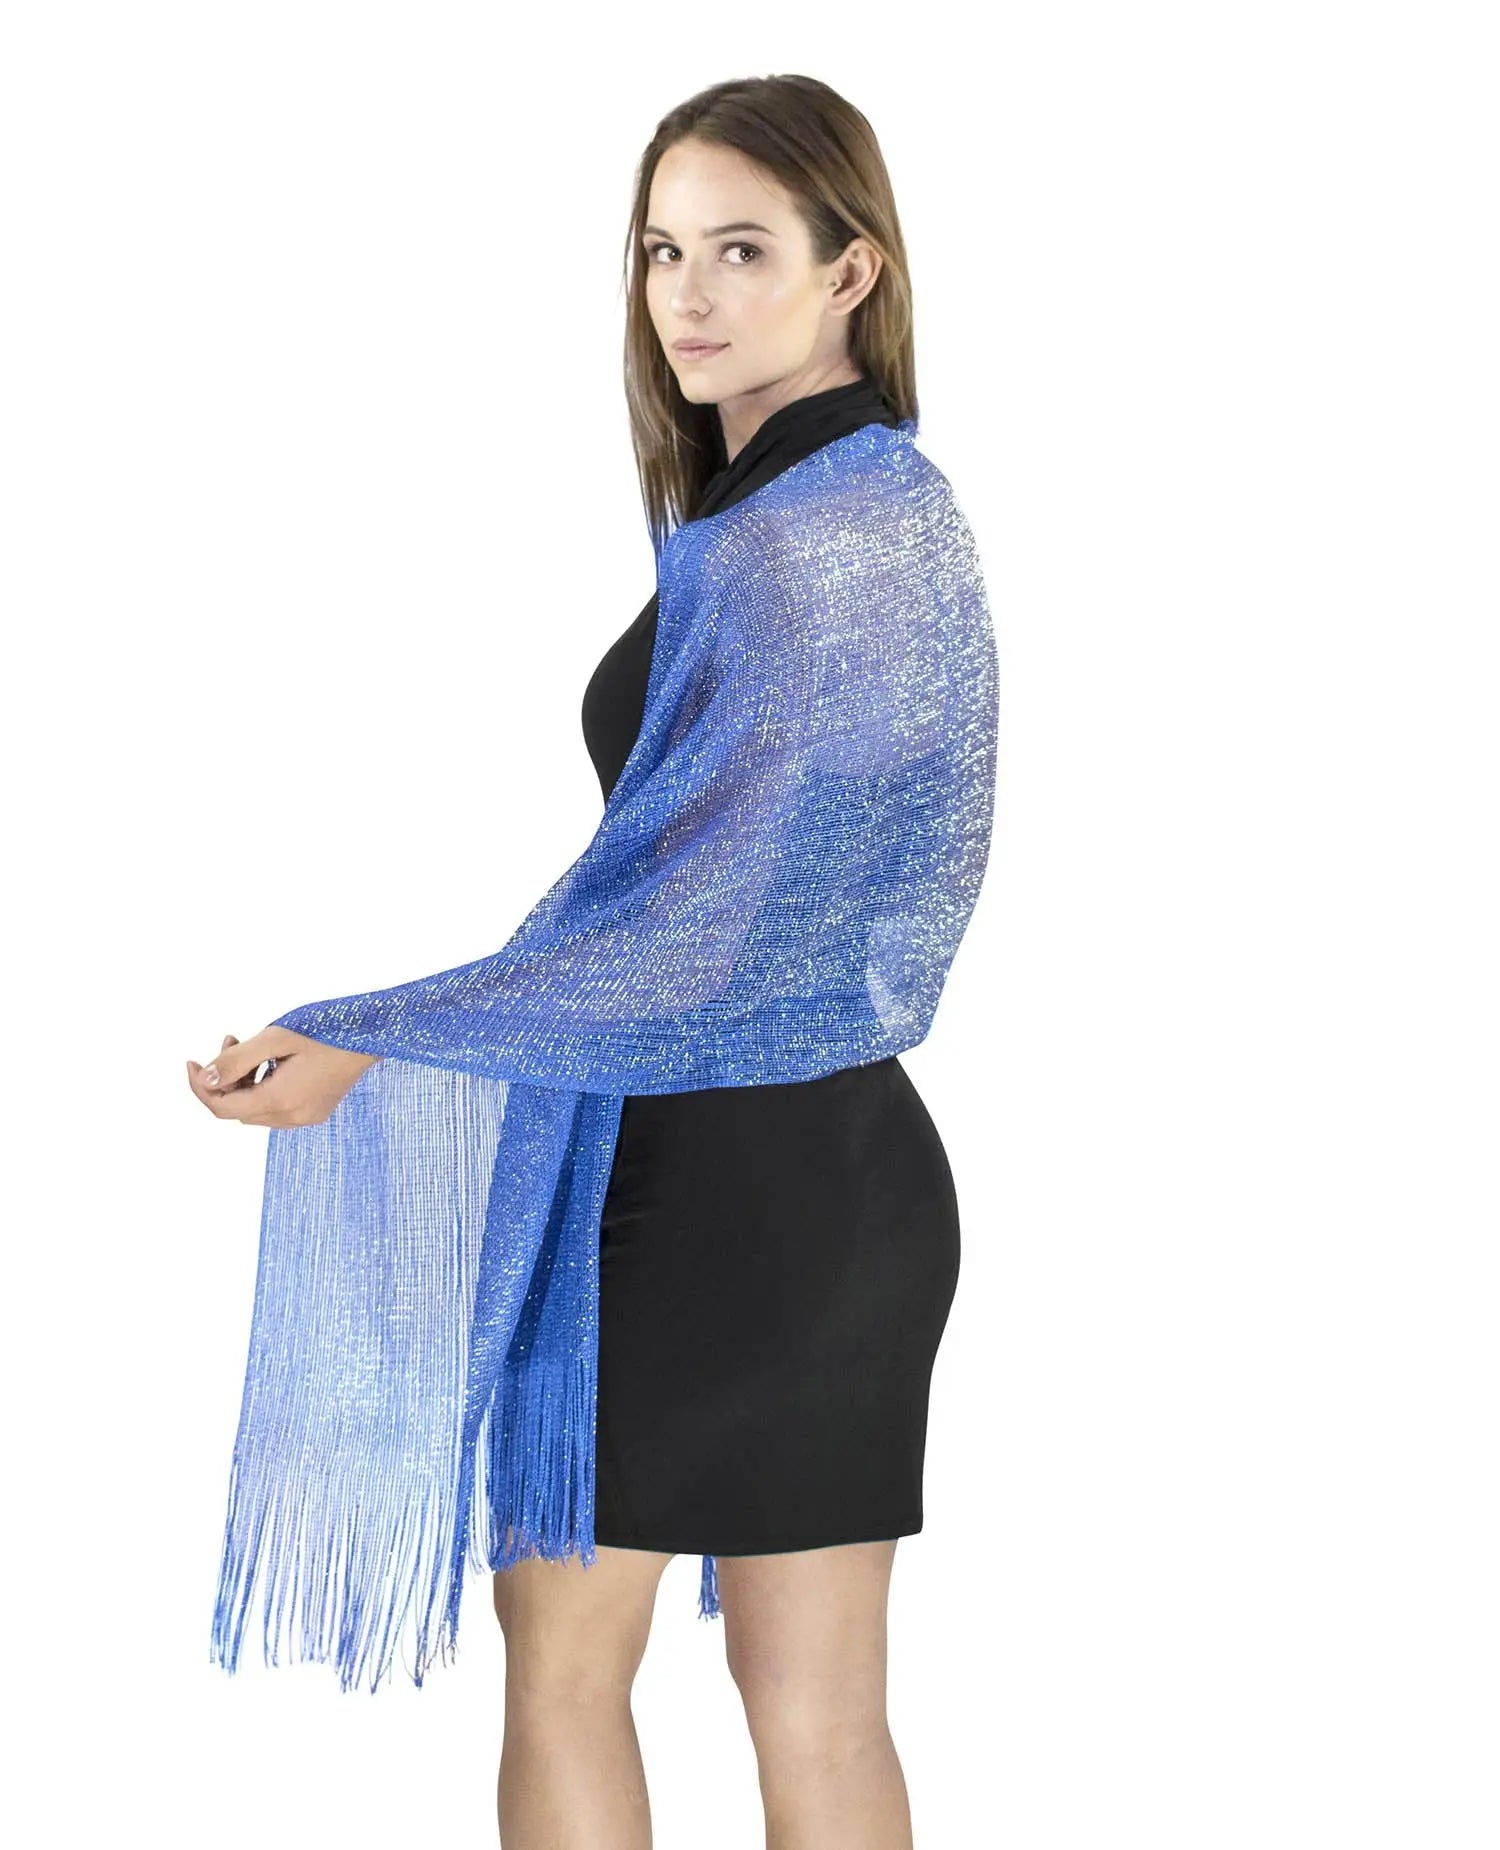 Lurex fishnet evening scarf in blue.